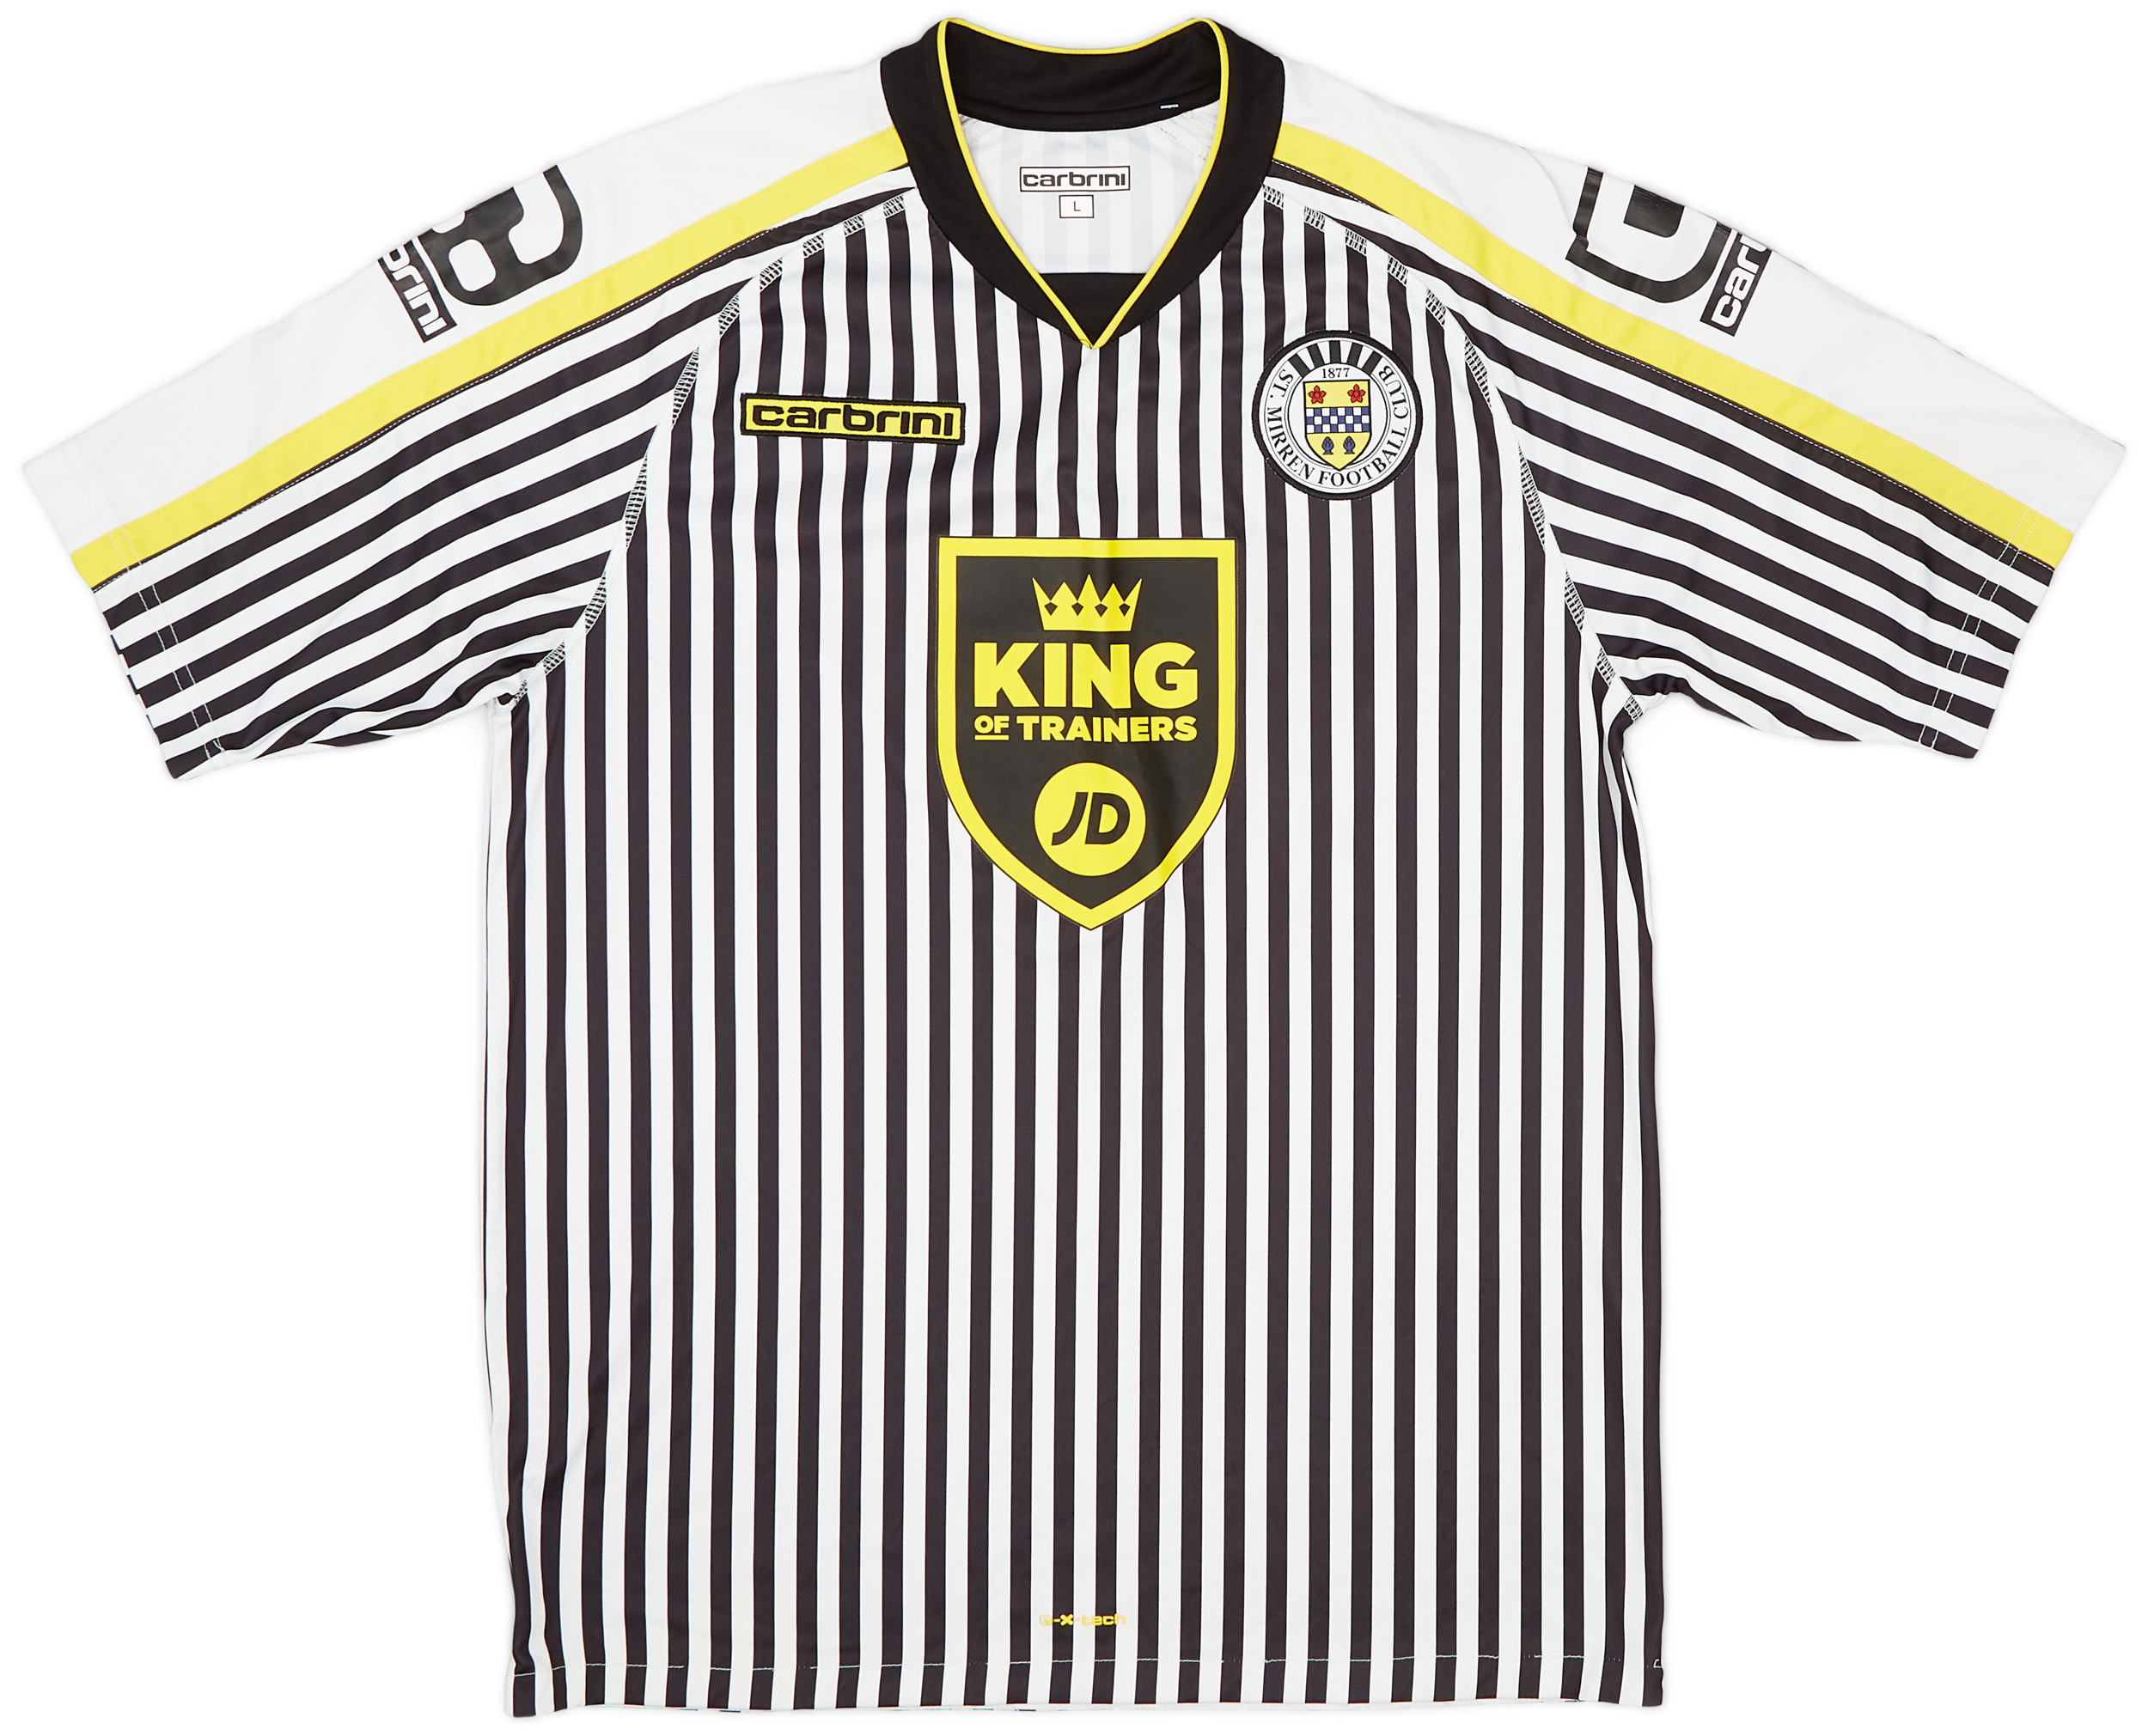 St Mirren  home shirt  (Original)